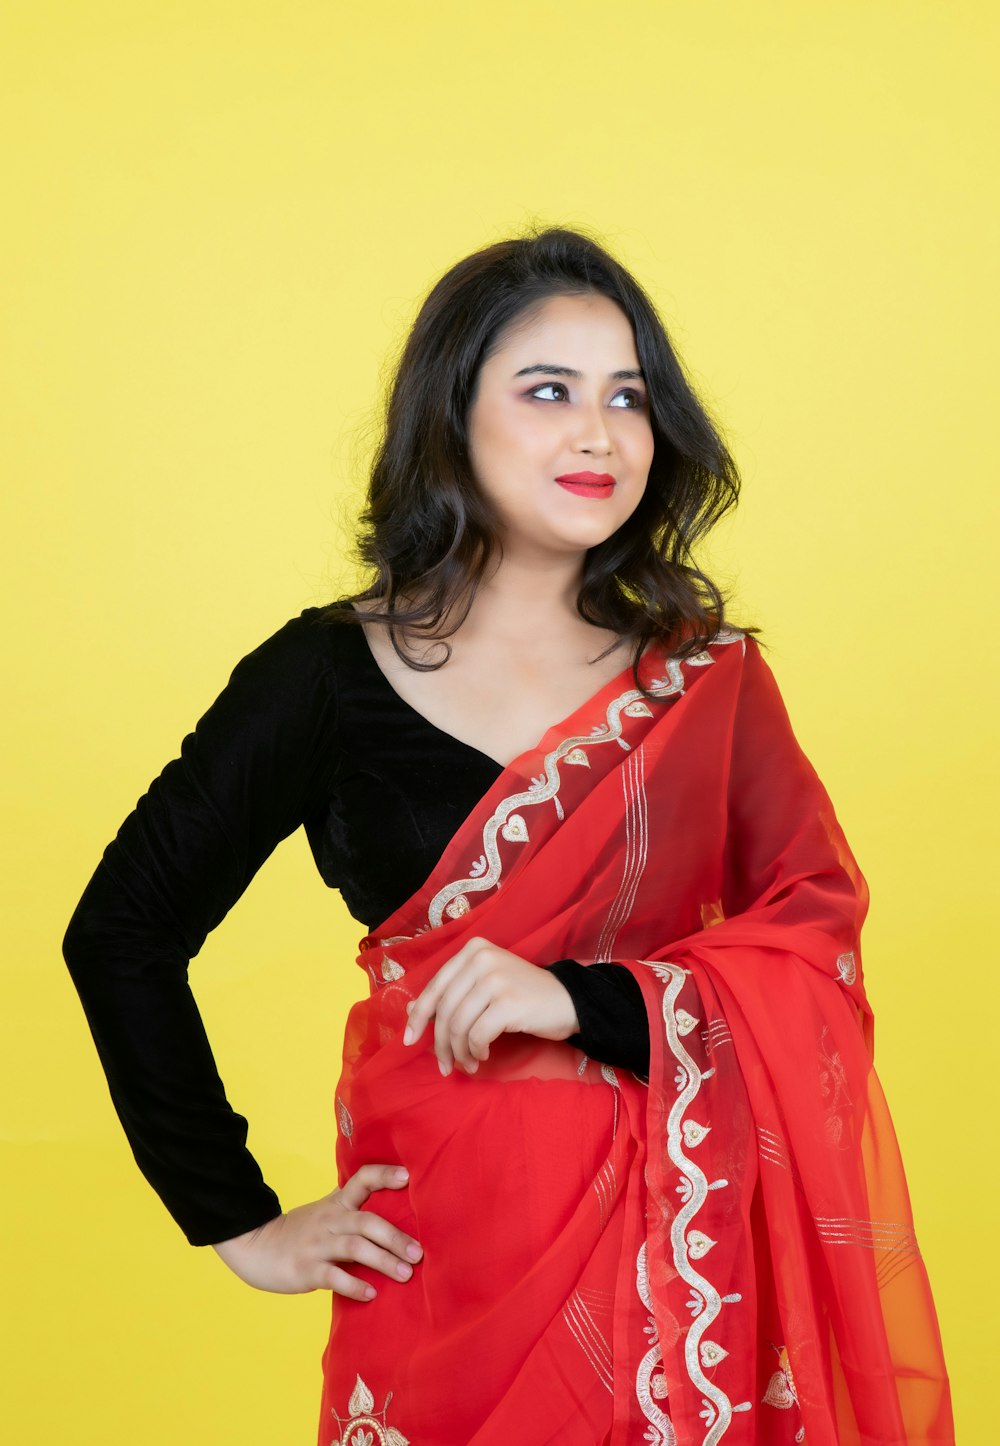 Una donna che indossa un sari rosso e bianco